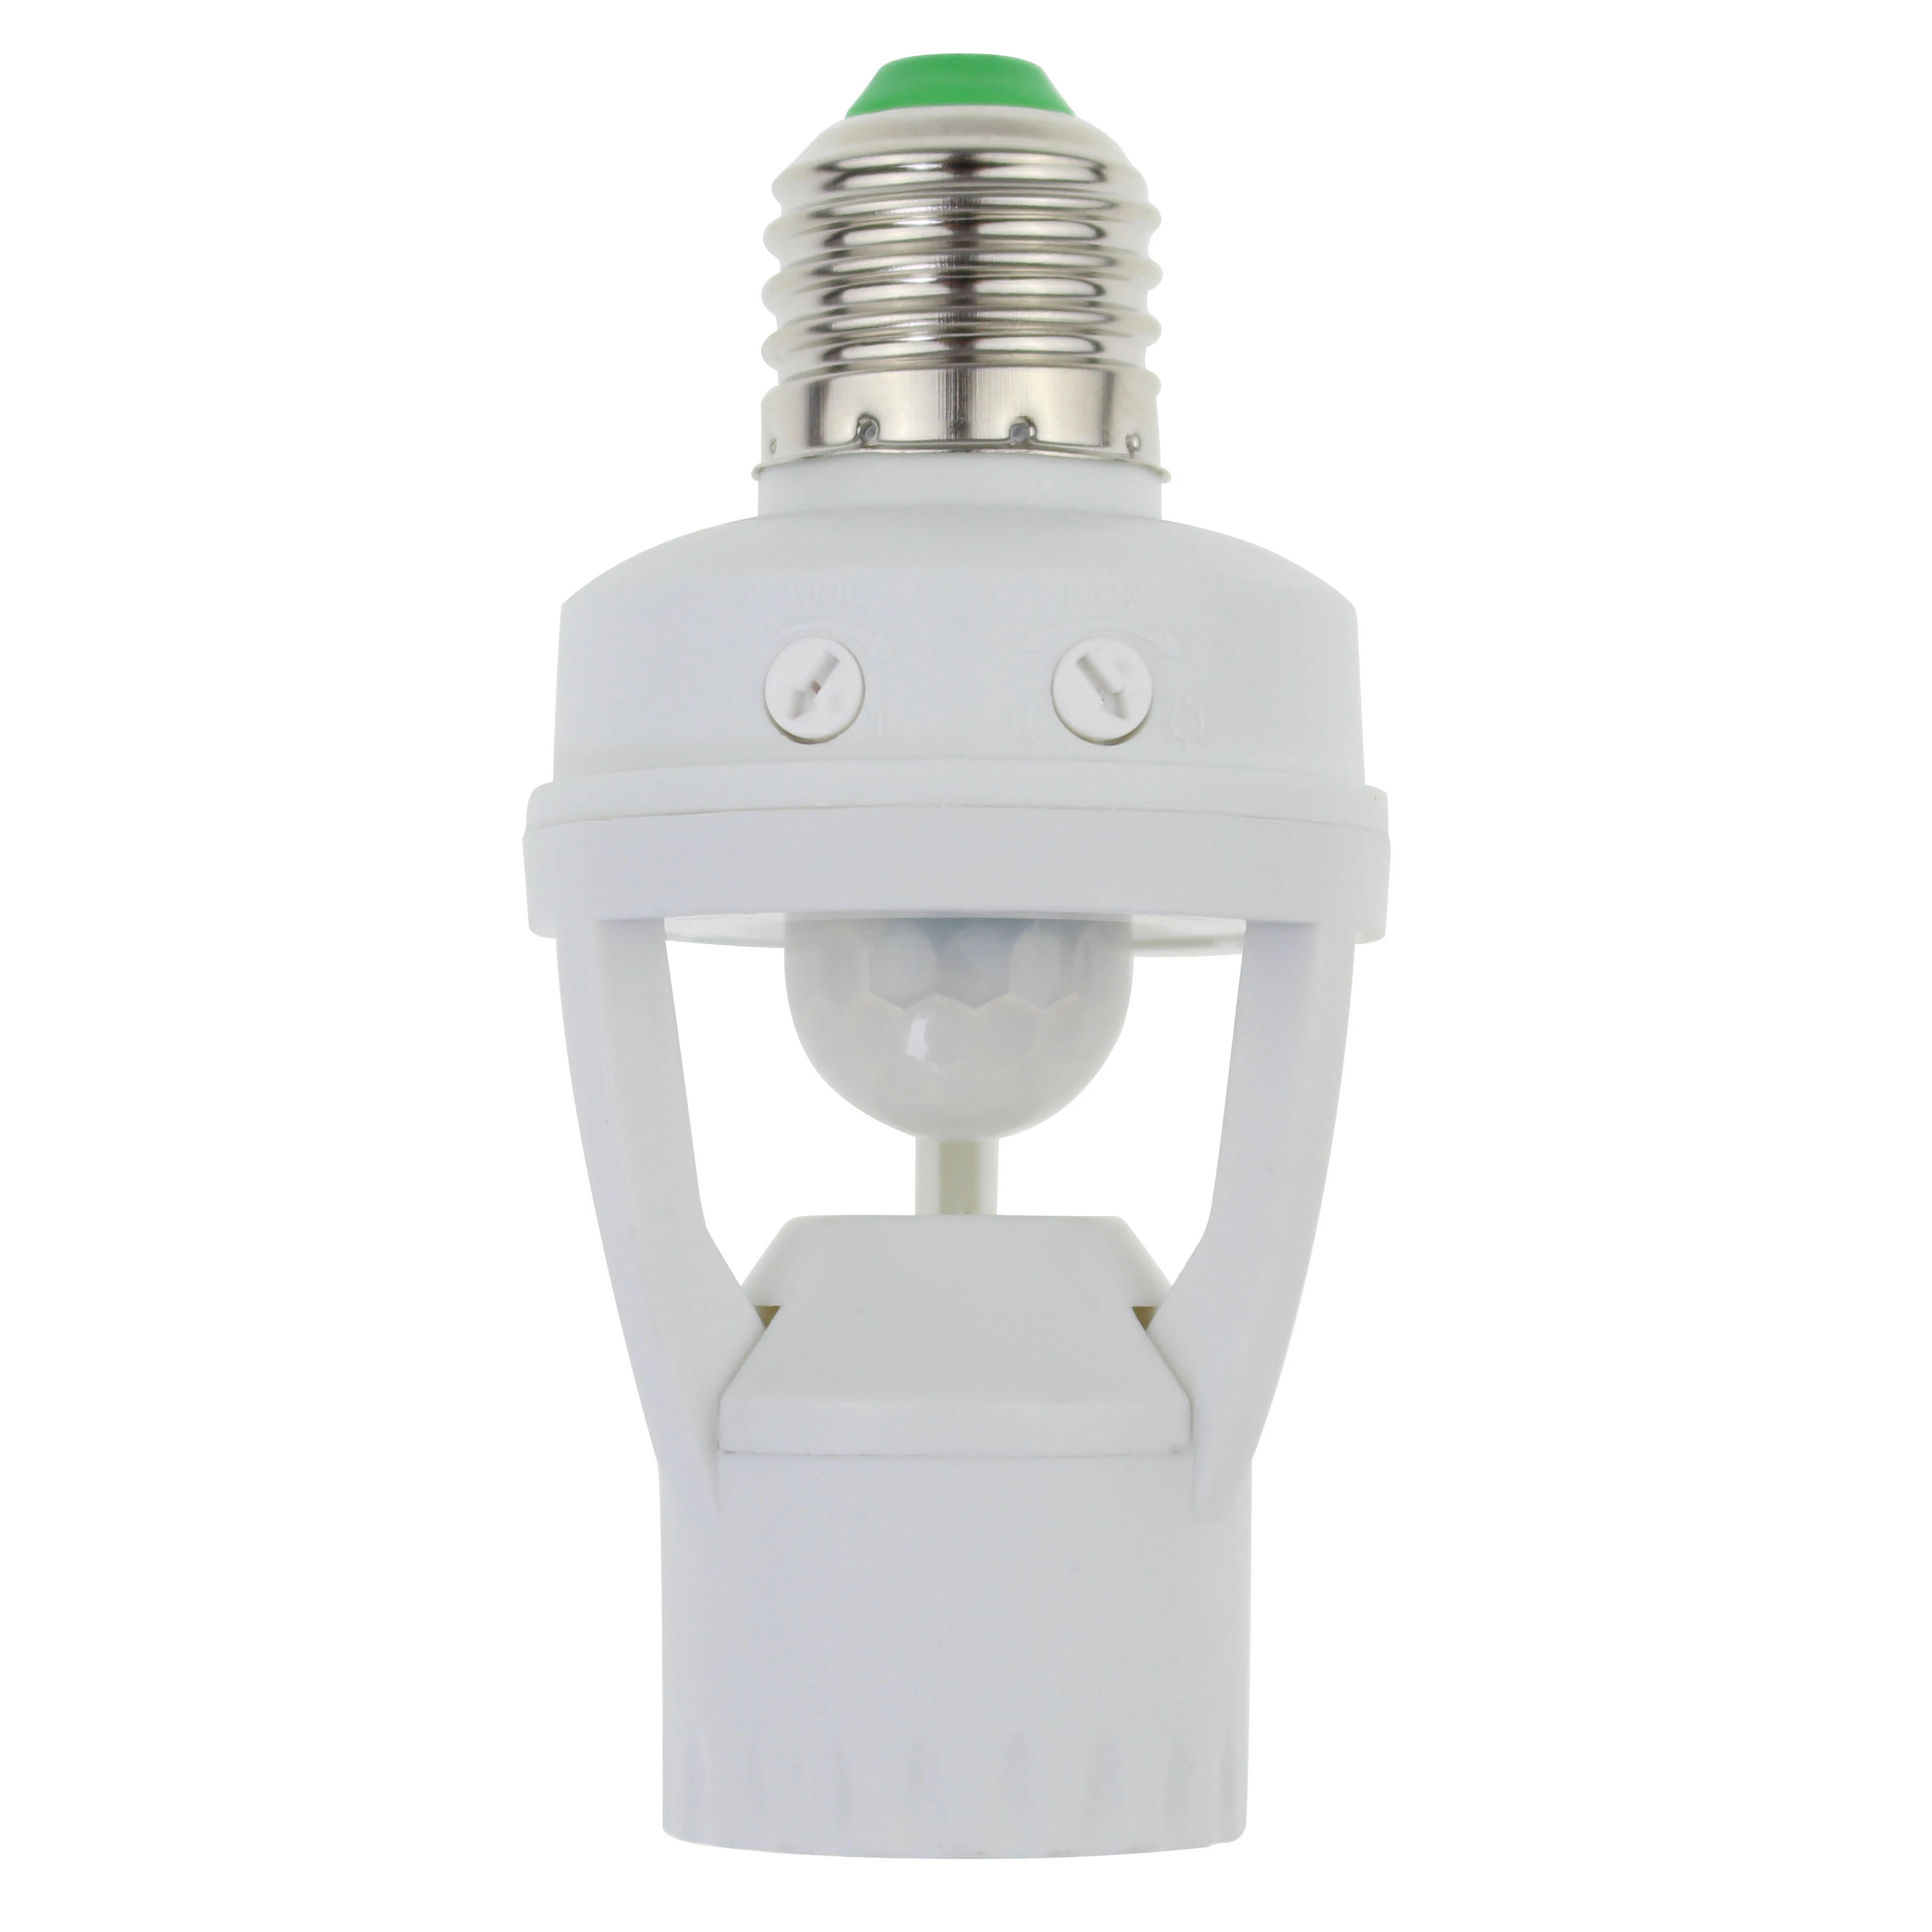 E27 Pir infrared motion sensor led night lamp holder base luminous adjustment pir motion sensor switch light holder